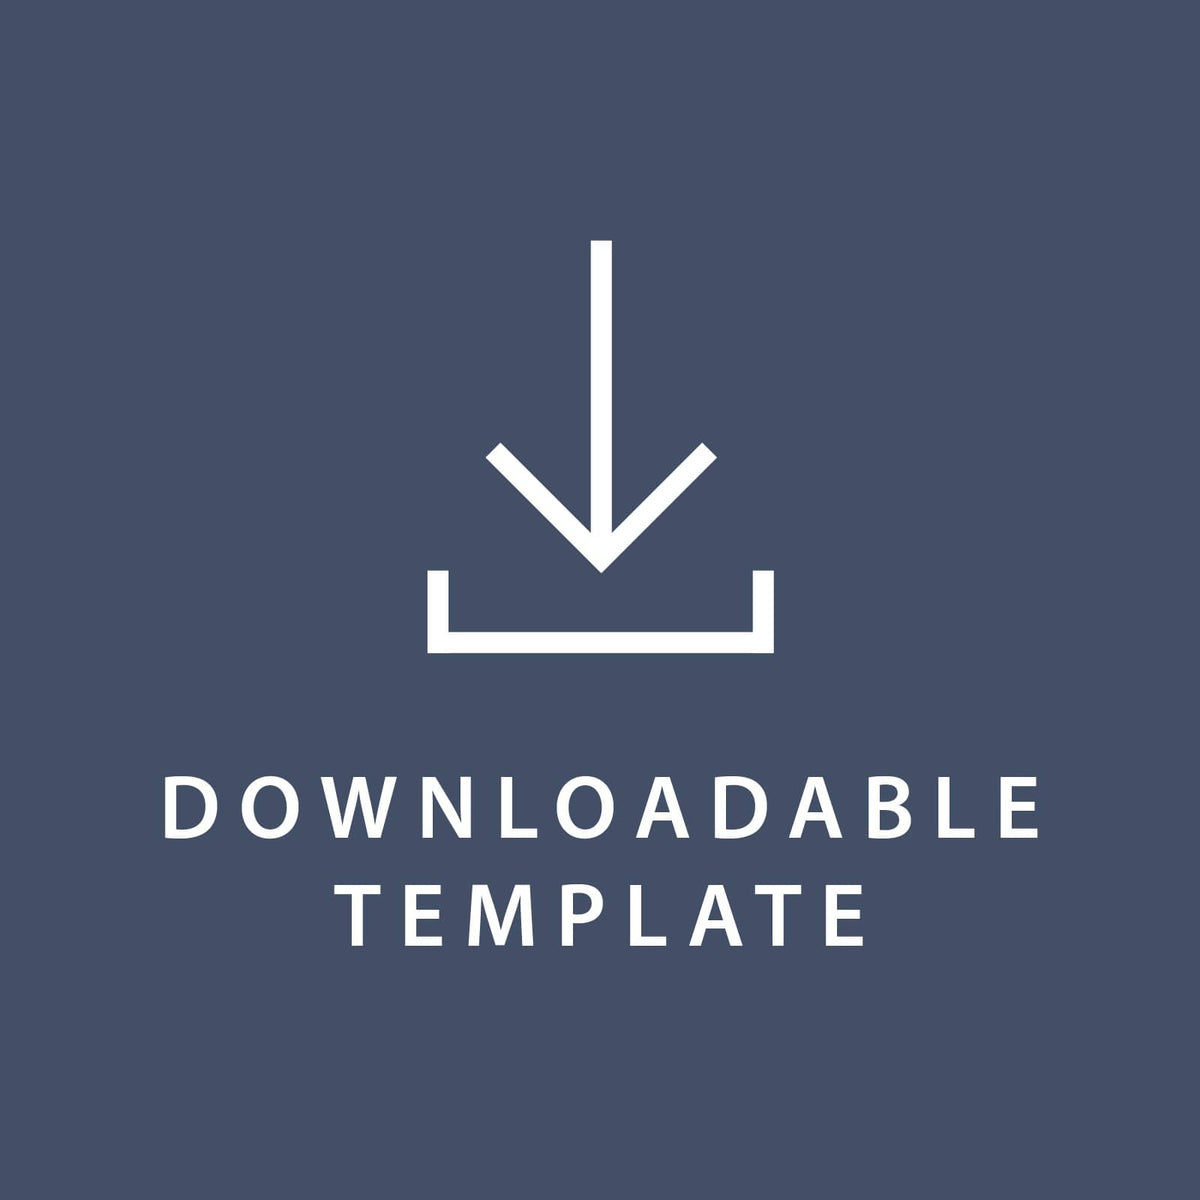 Template for 8.5 x 5.5 Response Cards Gartner Studios Template tmplt0822